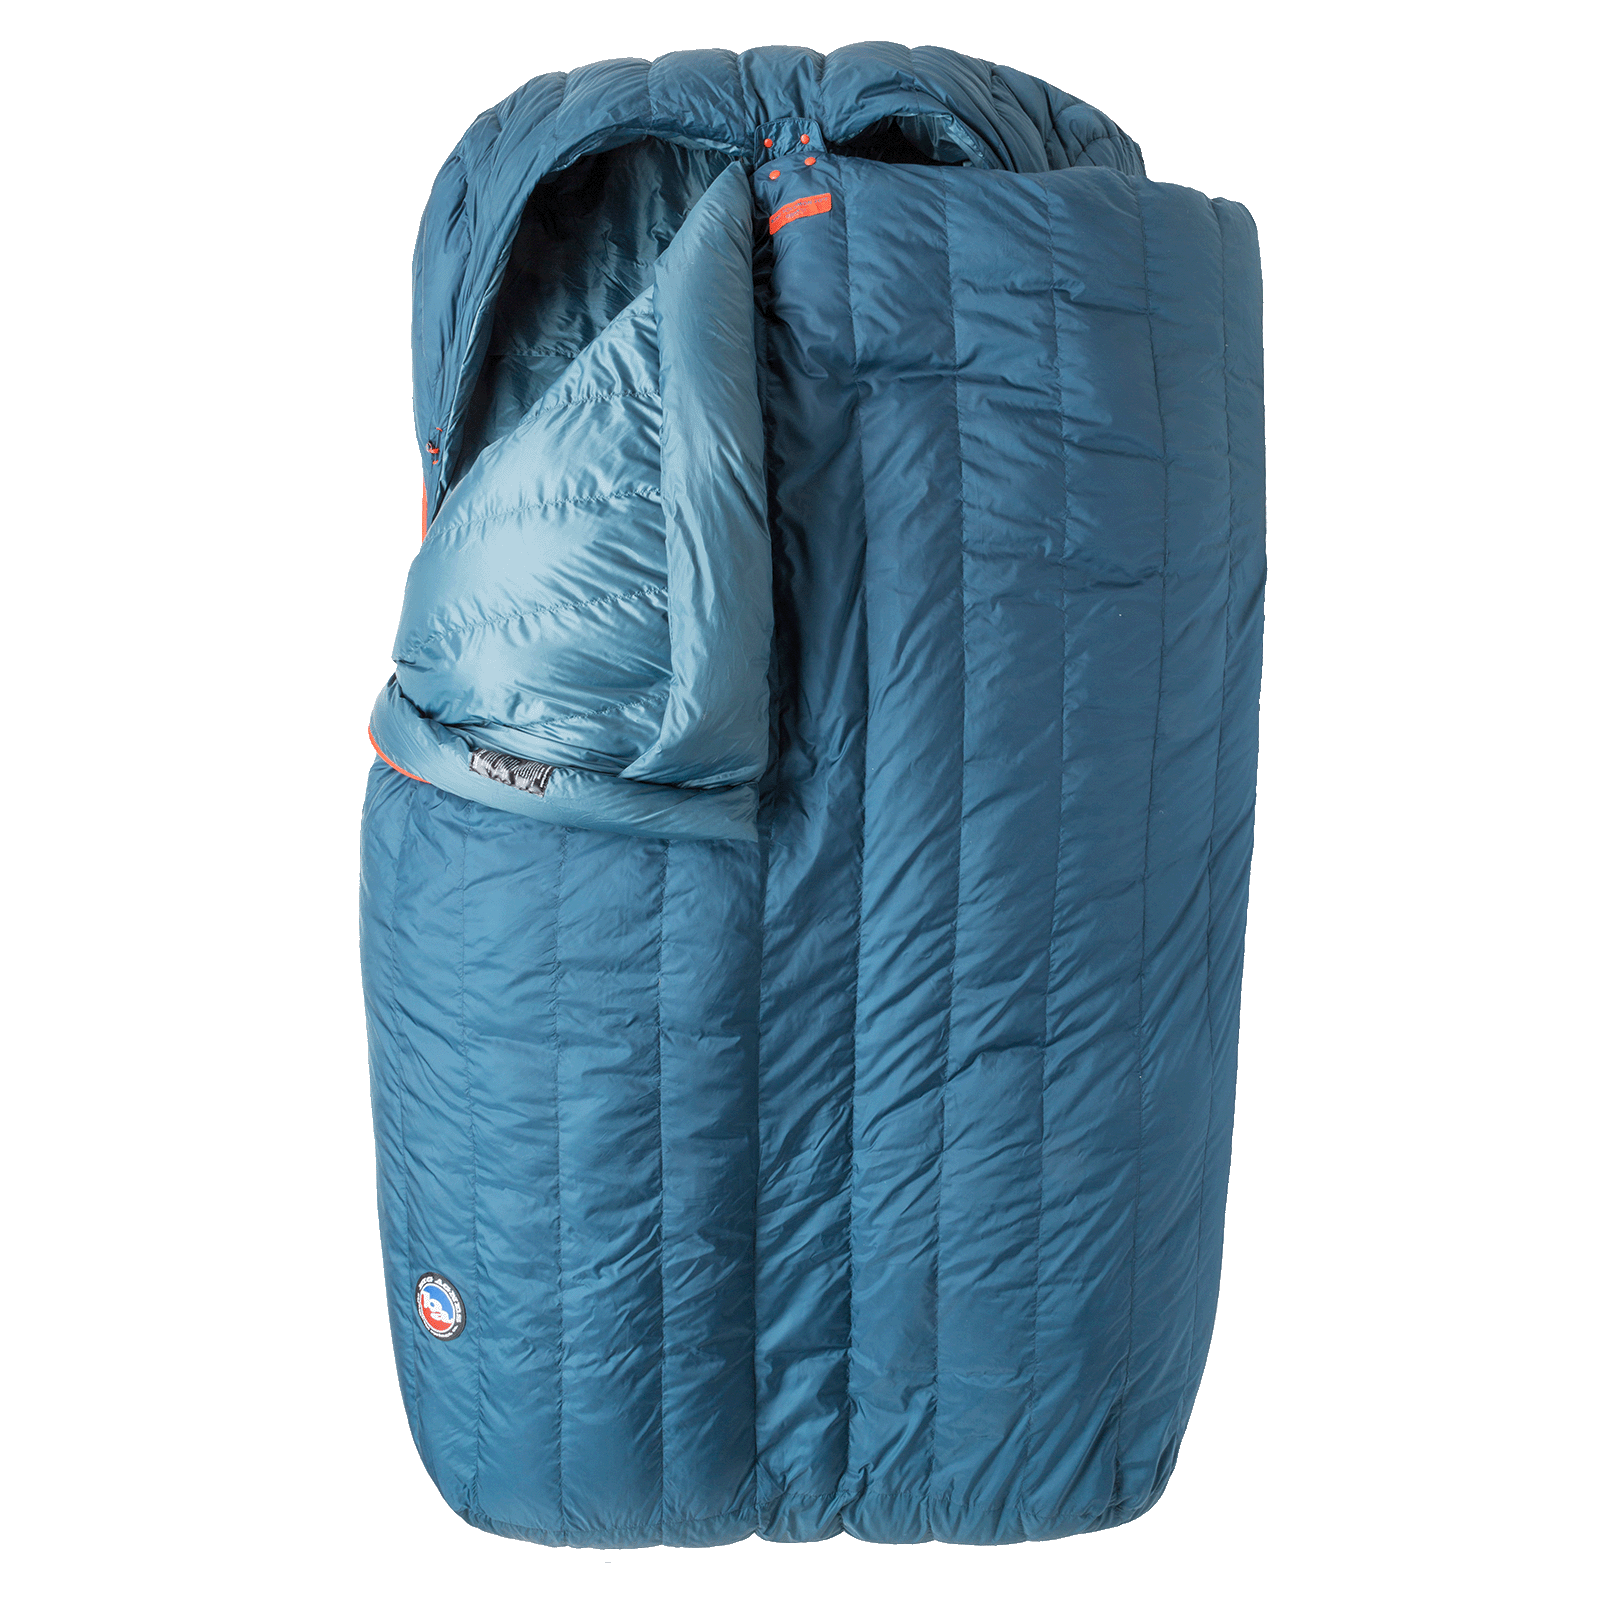 3-Season Sleeping Bags vs. Winter Sleeping Bags